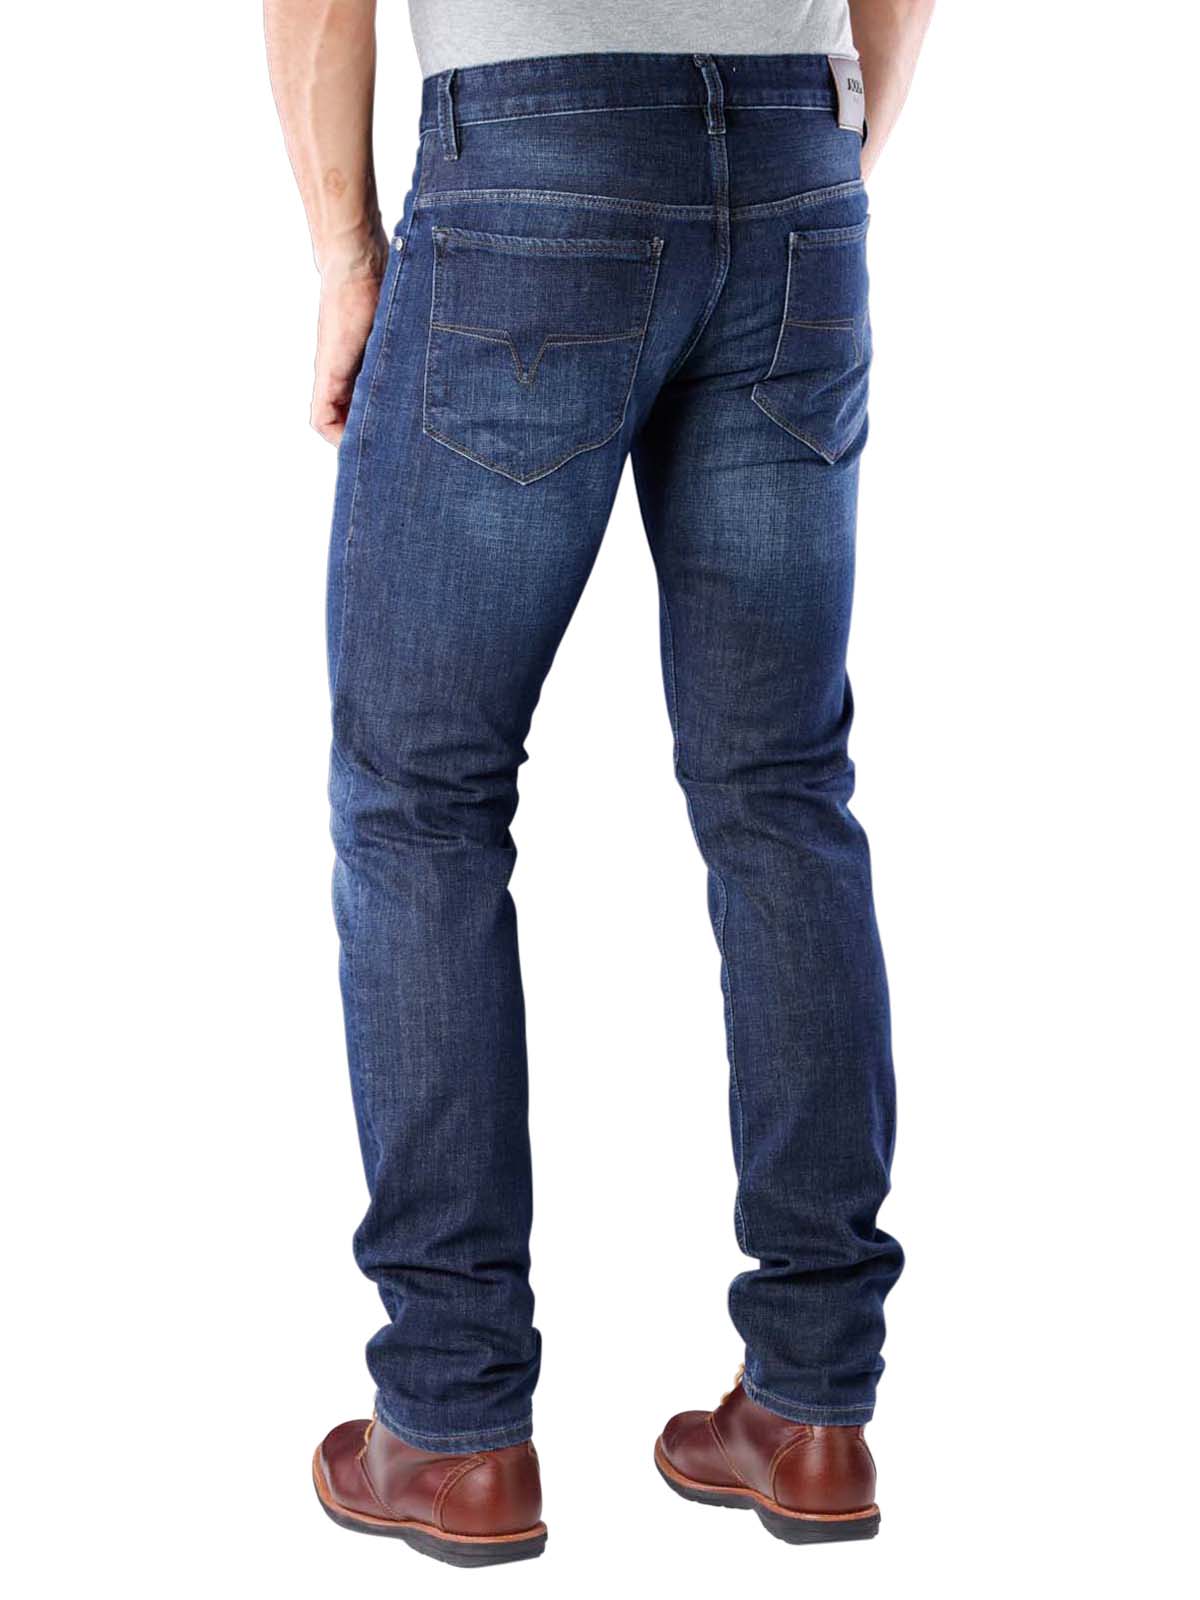 joop jeans stephen slim fit